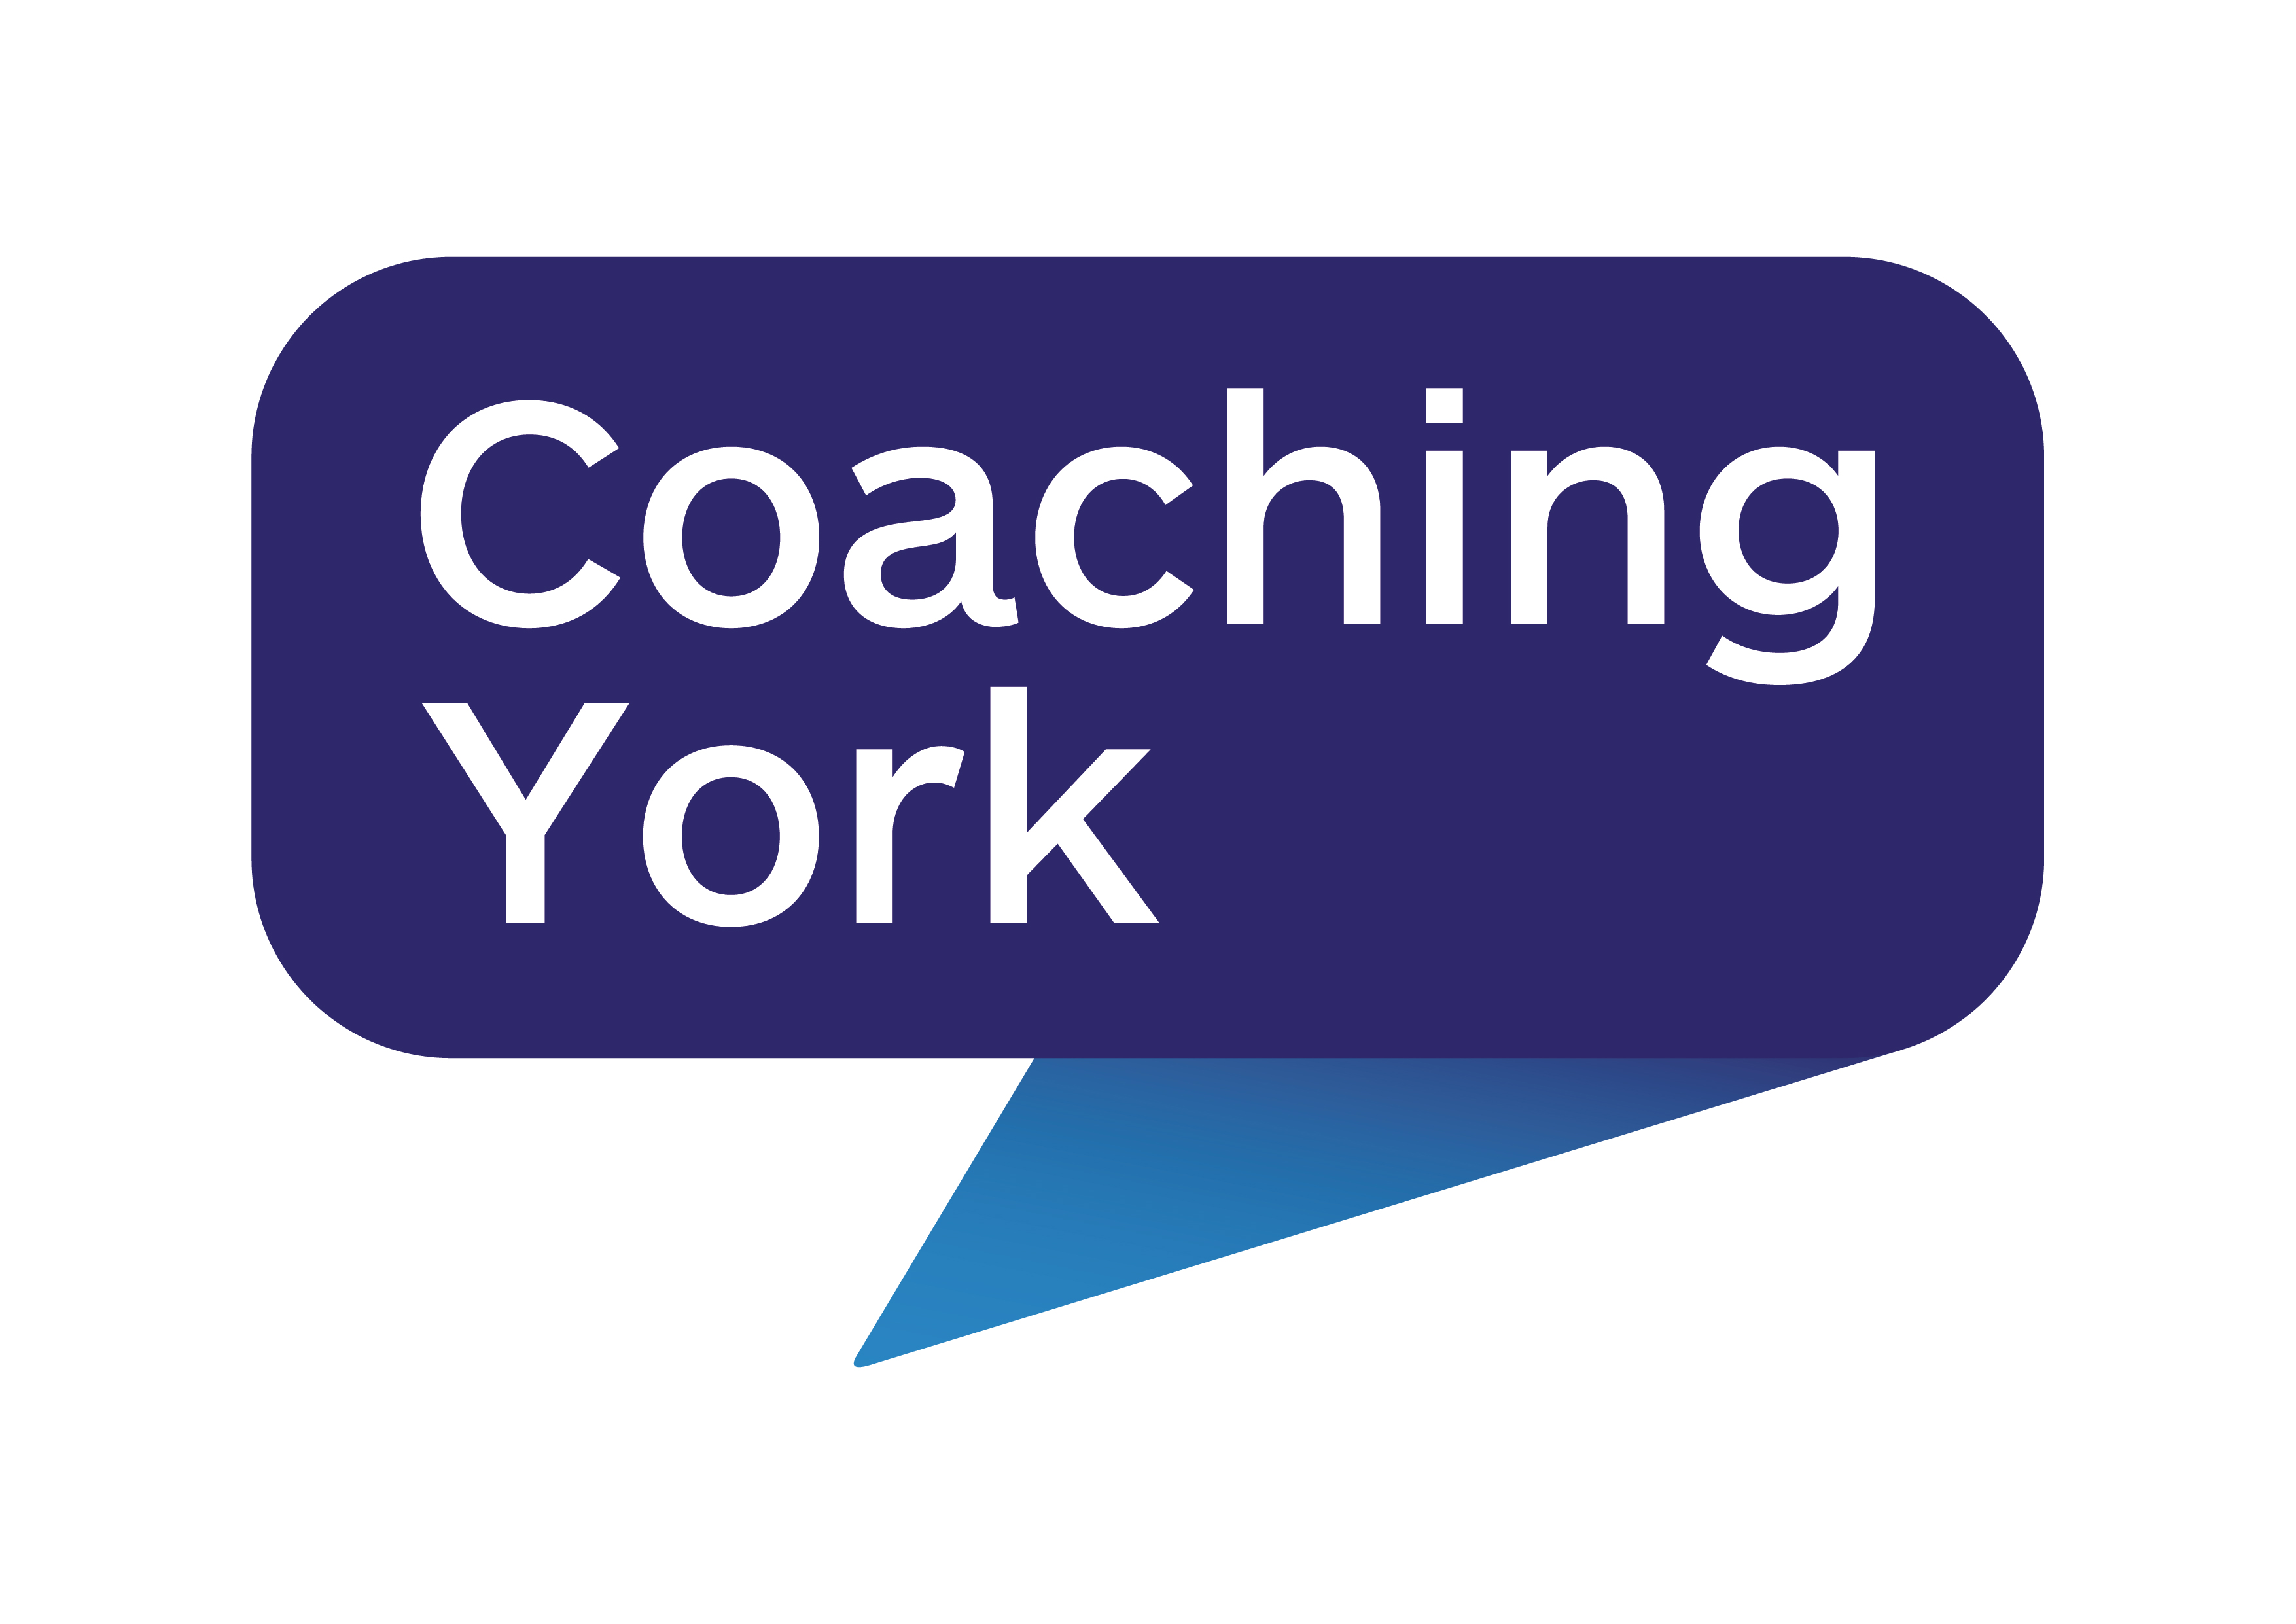 Coaching York logo